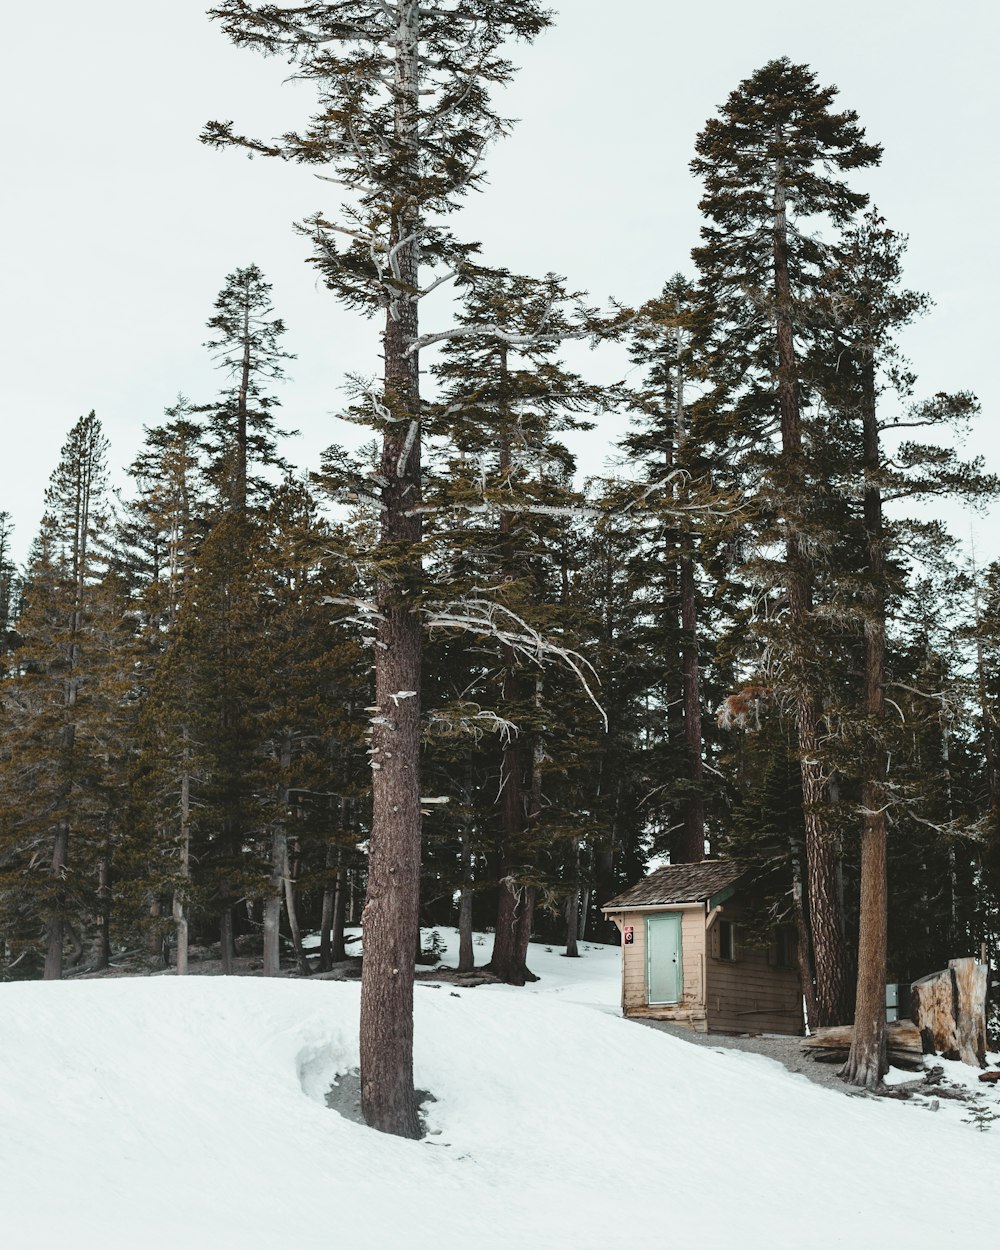 cabanon en bois brun près d’un arbre au sommet d’une colline pendant l’hiver